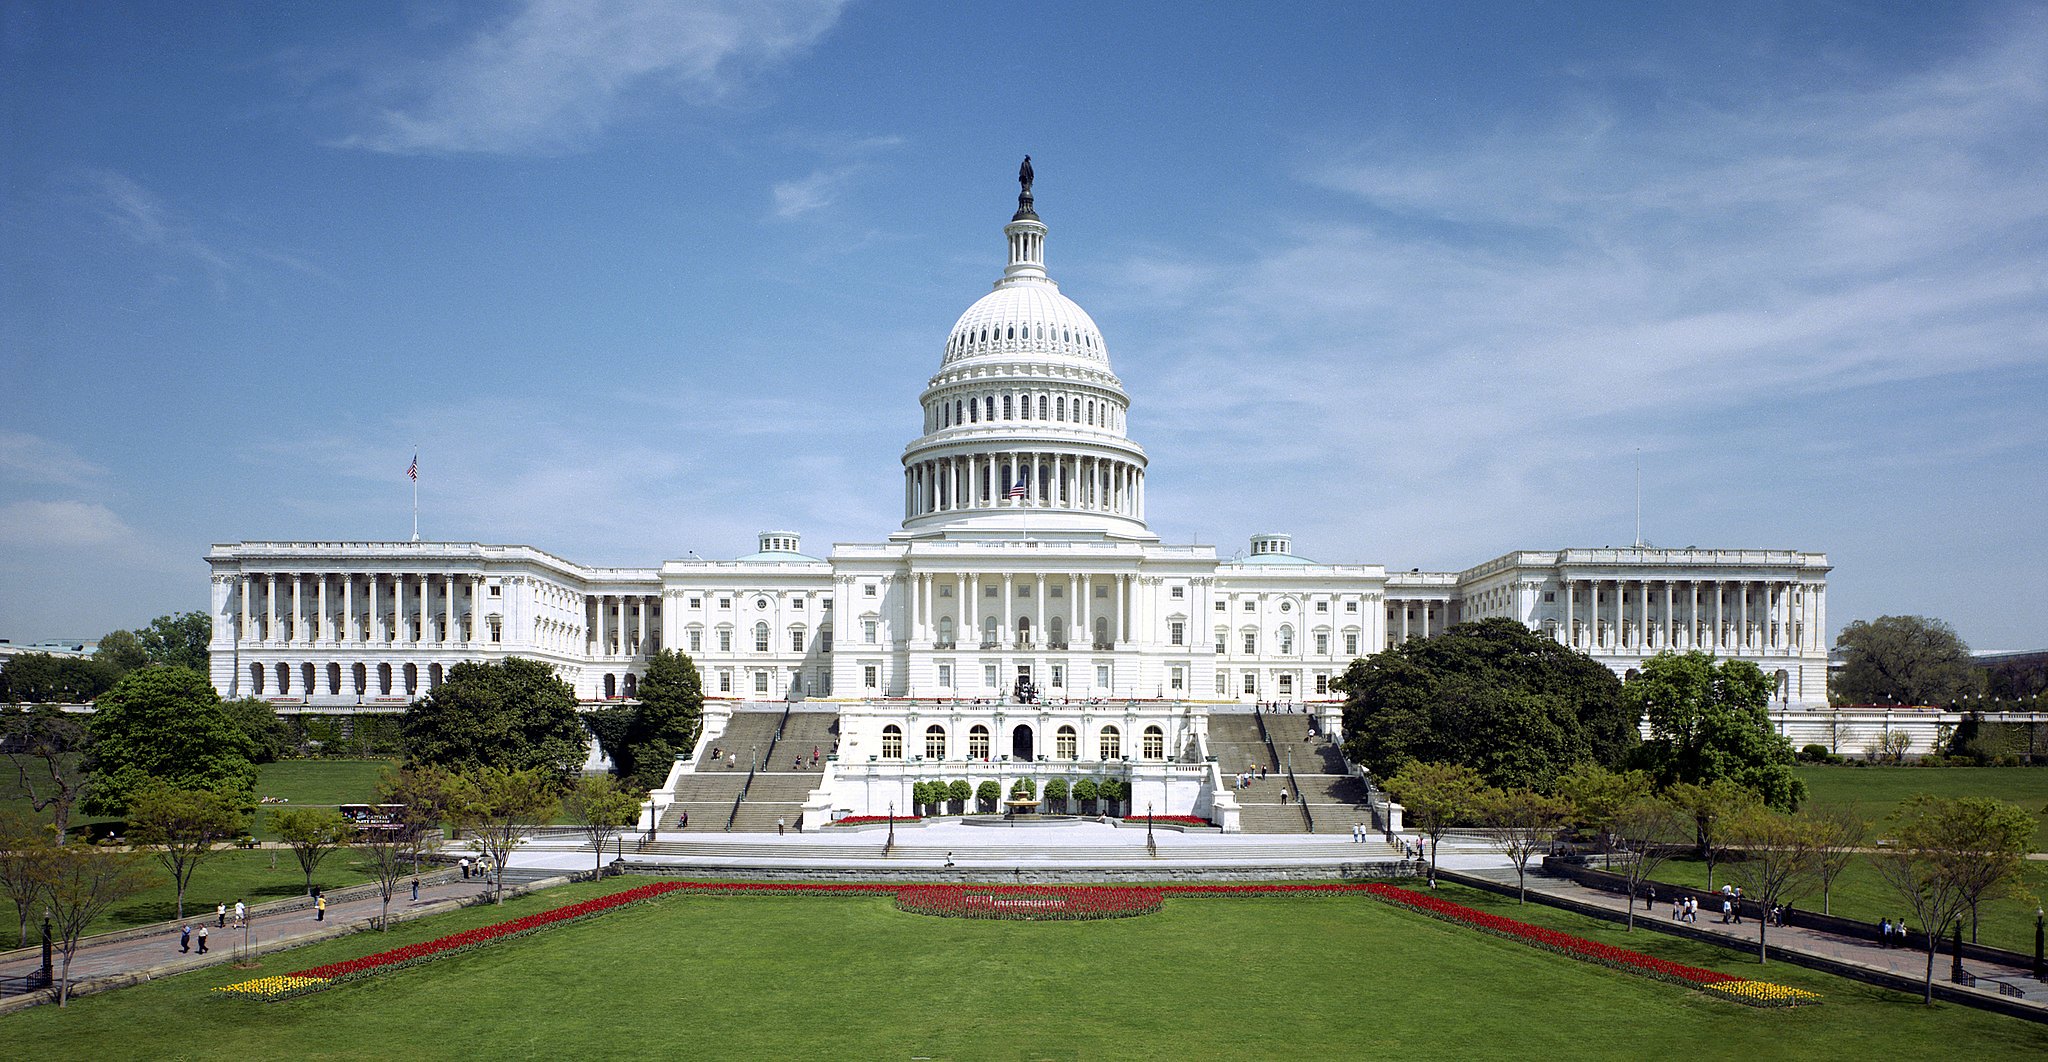 Landscape view of US Capitol building